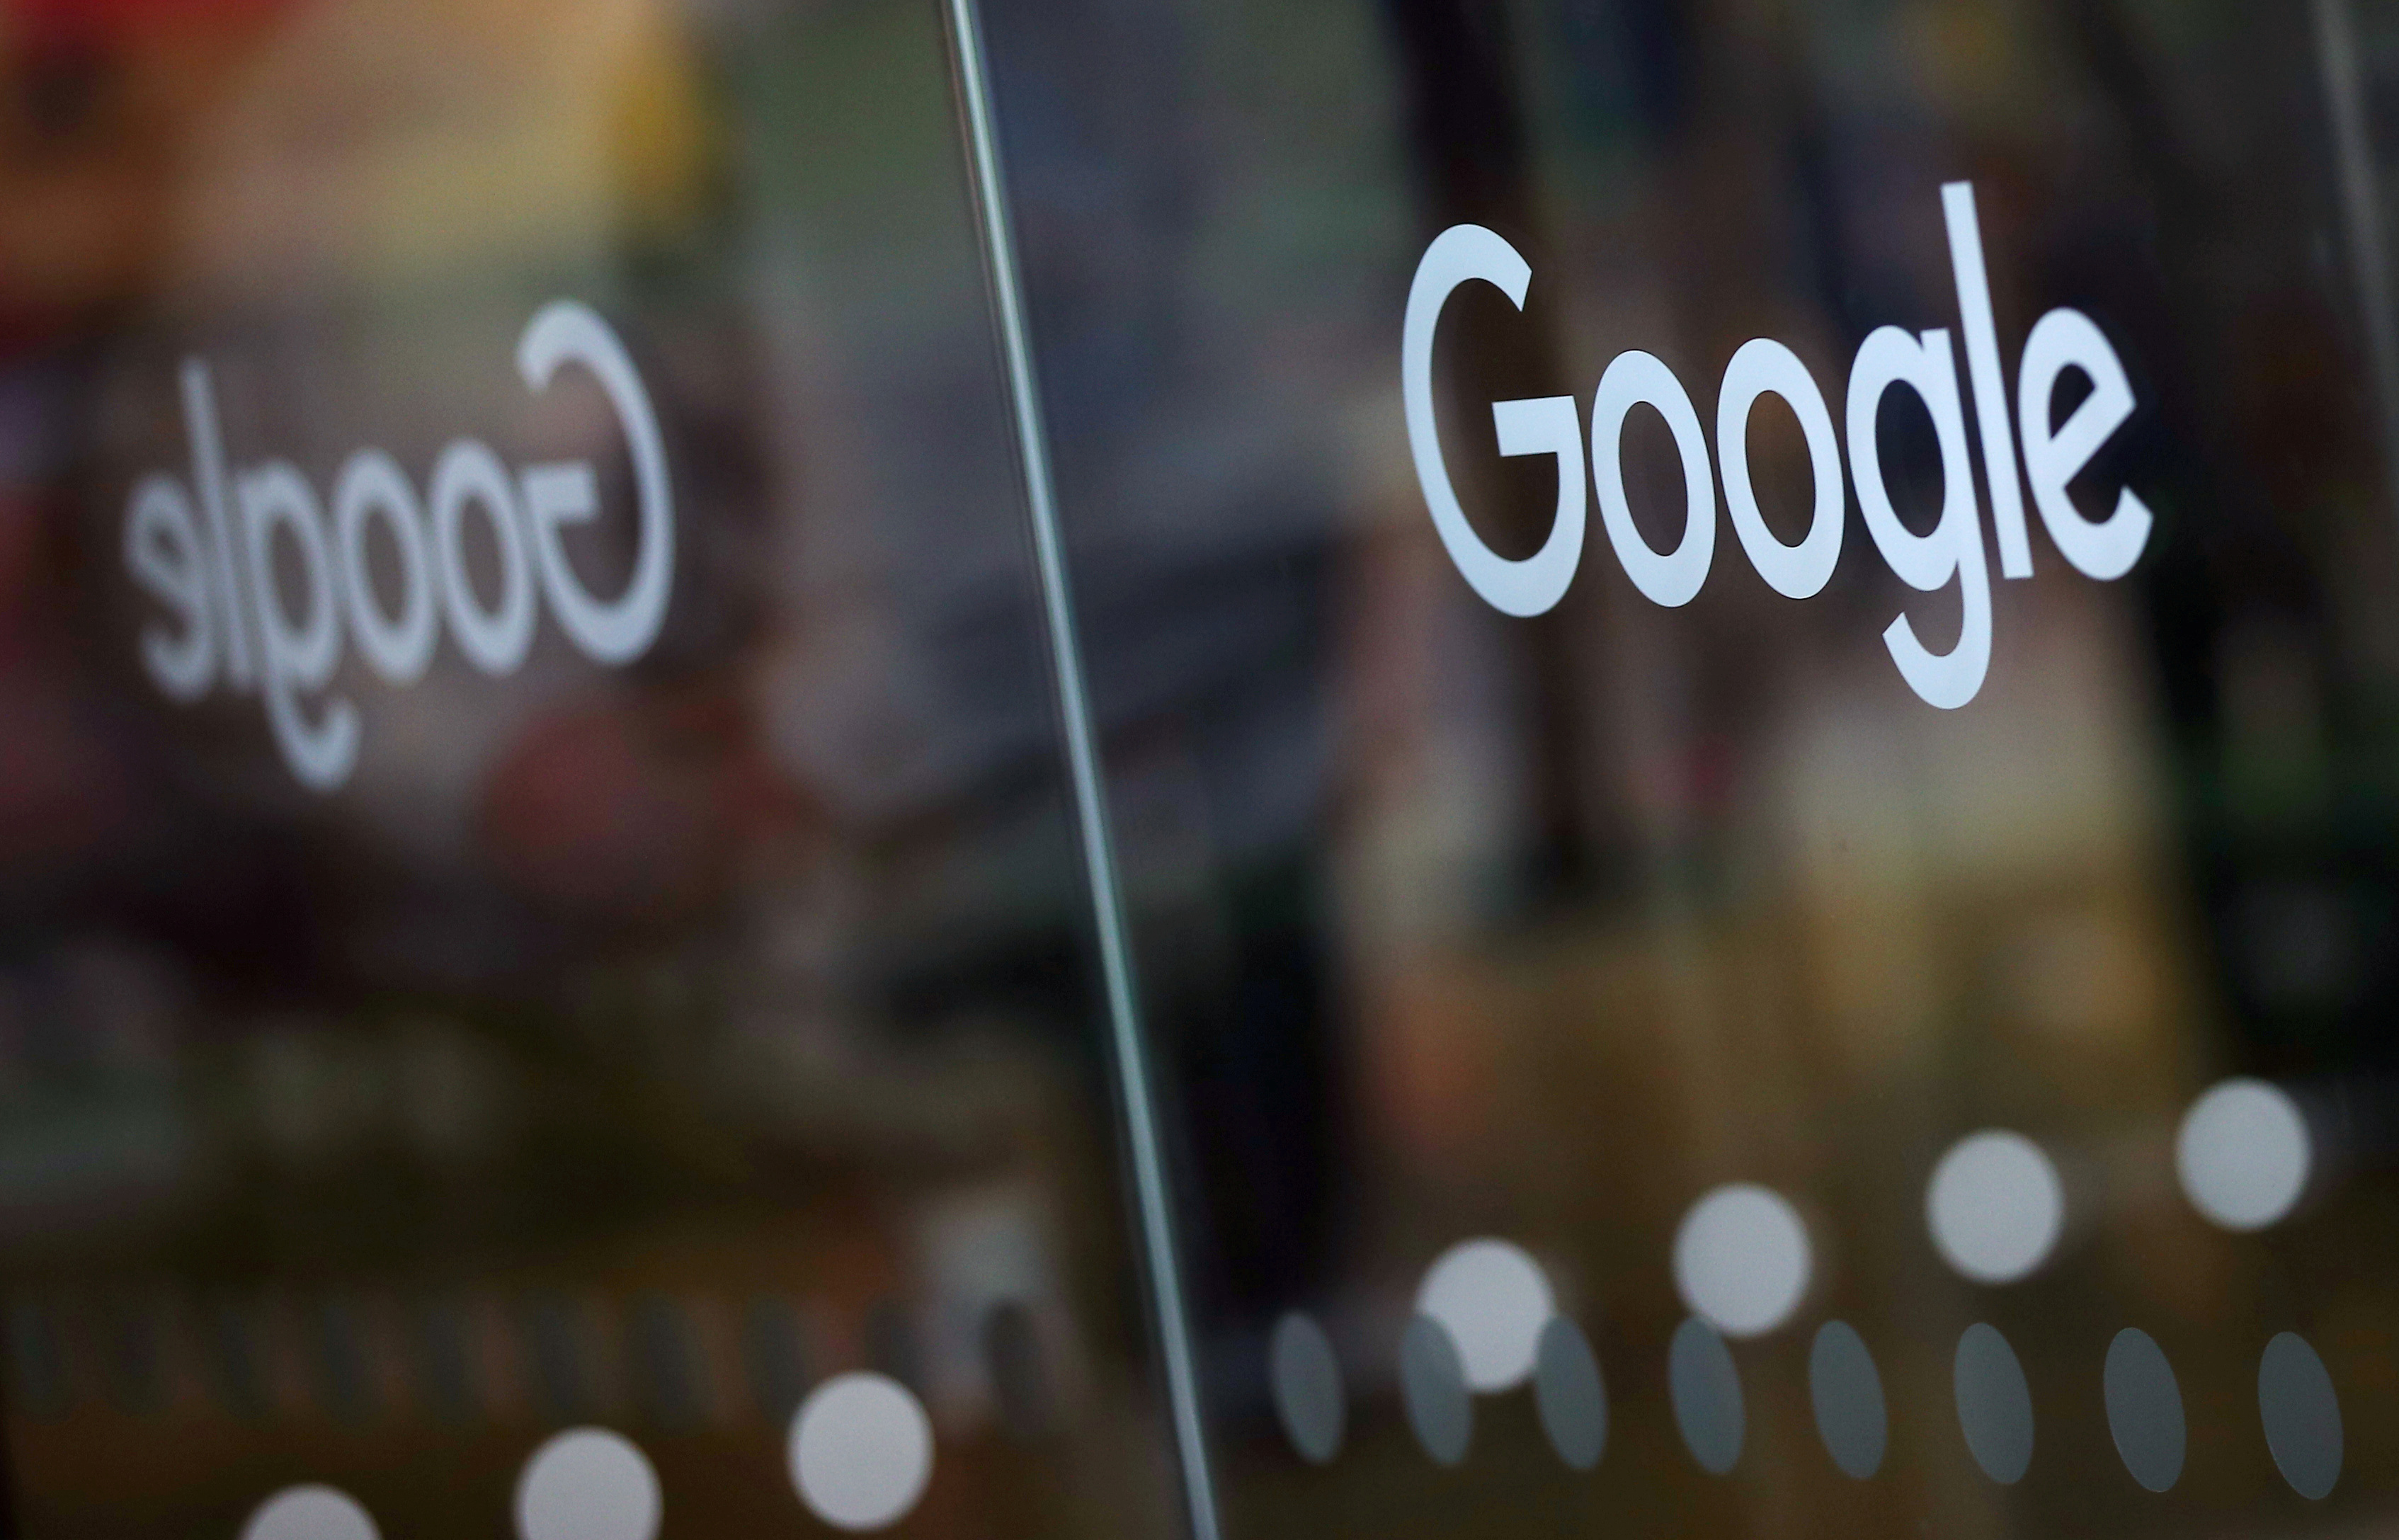 Pratiques anticoncurrentielles : Google attaqué de toutes parts aux Etats-Unis